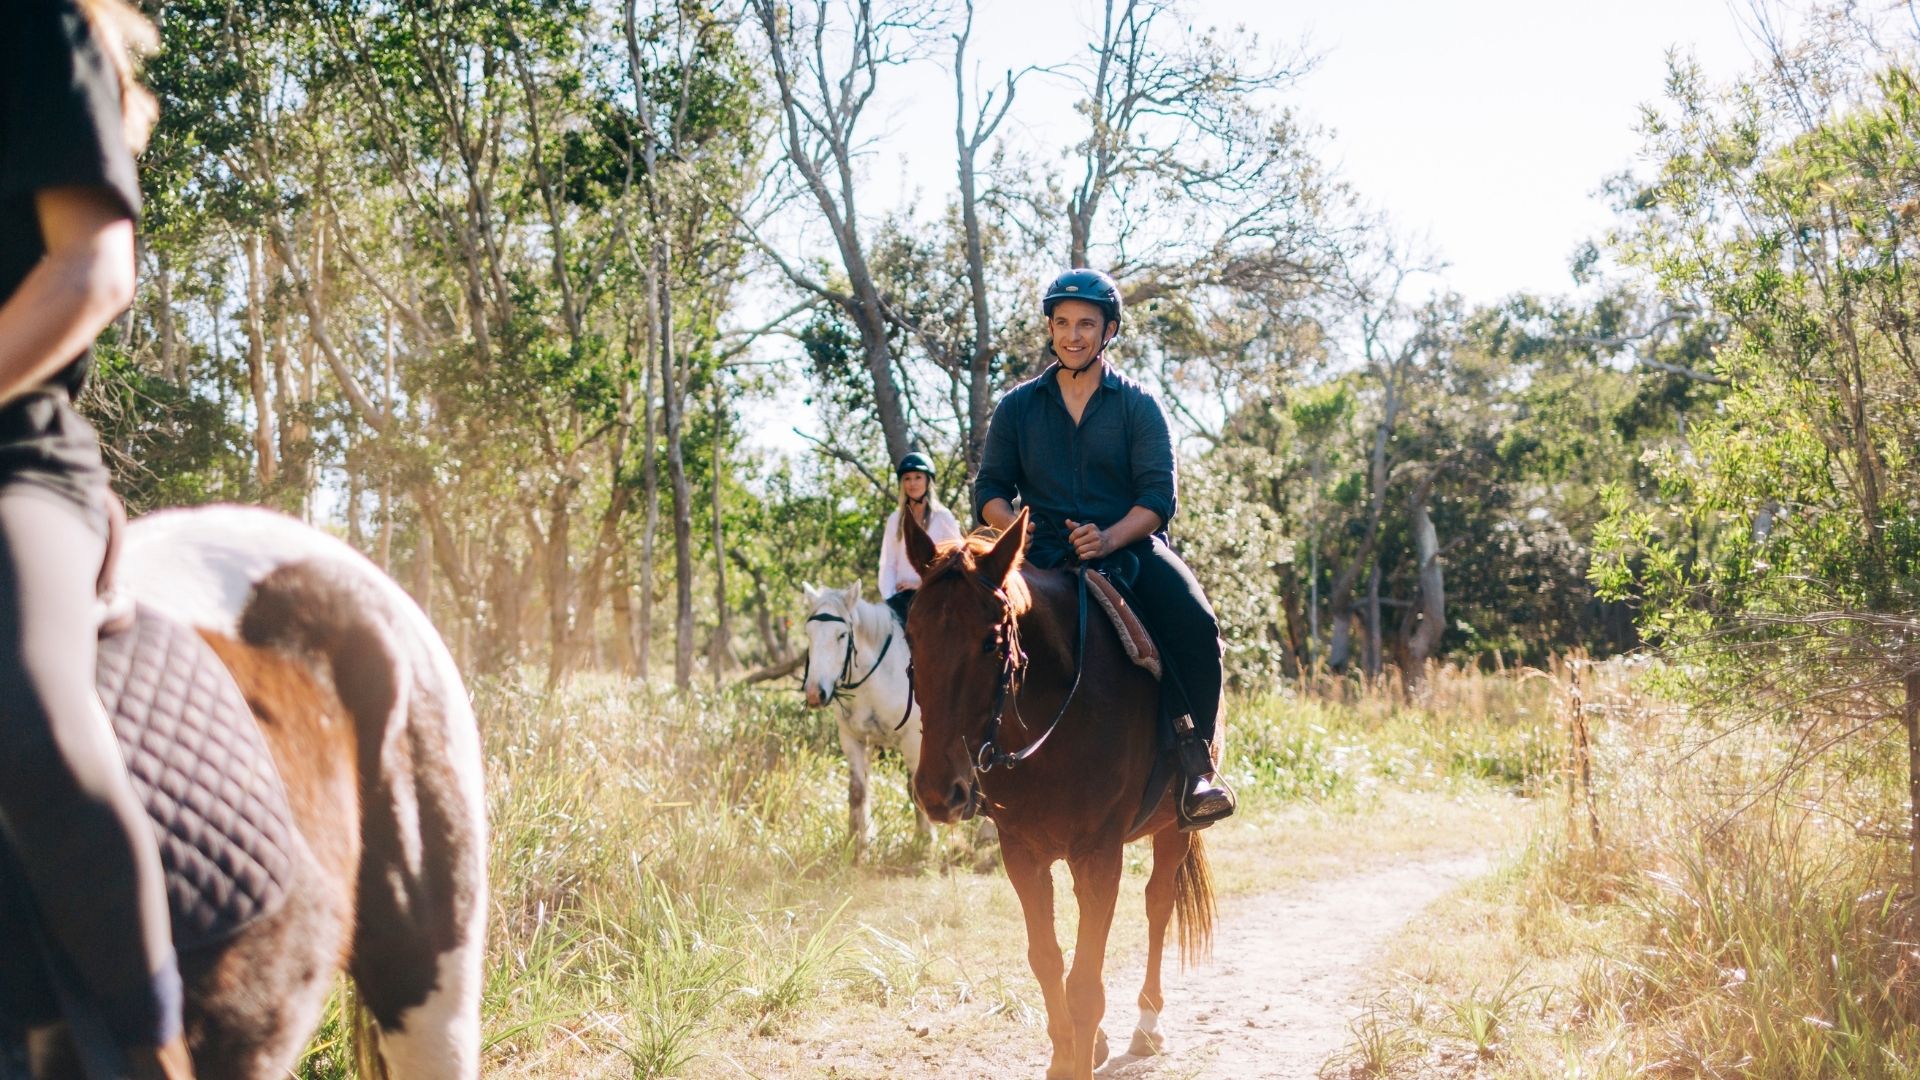 NSW byron bay horse riding tours